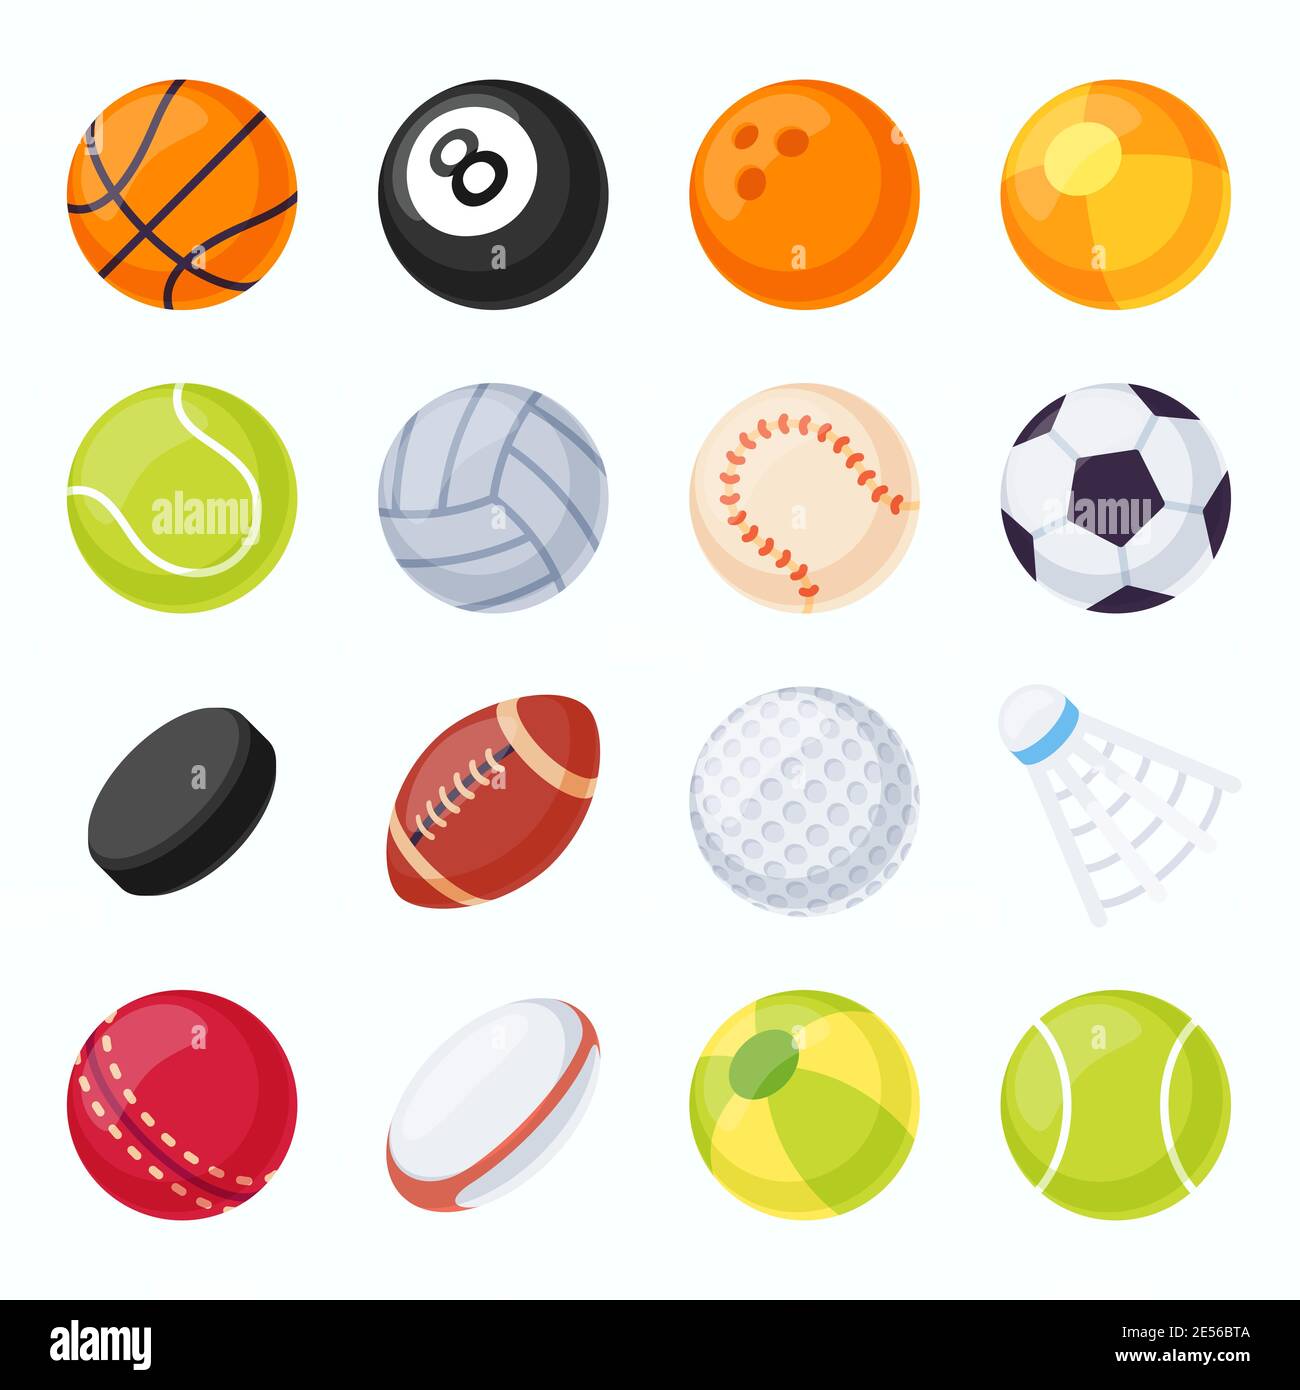 Sportbälle. Fußball, Tennis, Volleyball, Baseball und Fußballausrüstung.  Hockey Puck und Badminton Federball. Flacher Game Ball Vektor-Set  Stock-Vektorgrafik - Alamy